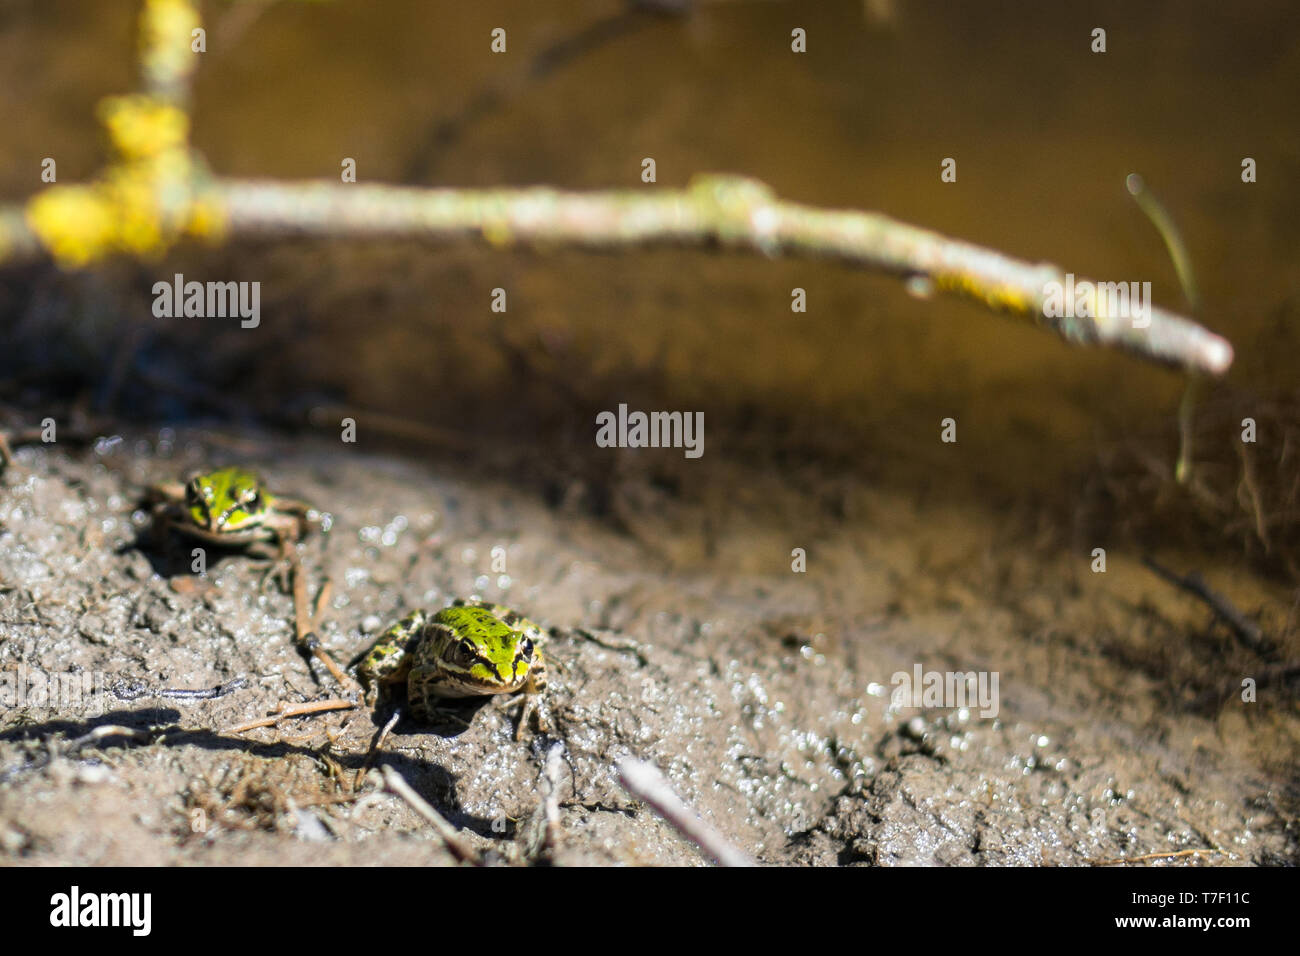 Due rane (Pelophylax lessonae) concentrarsi su una rana in avanti. Fiume rane illuminata dal sole di primavera. Rana nella parte posteriore è leggermente sfocata. Foto Stock